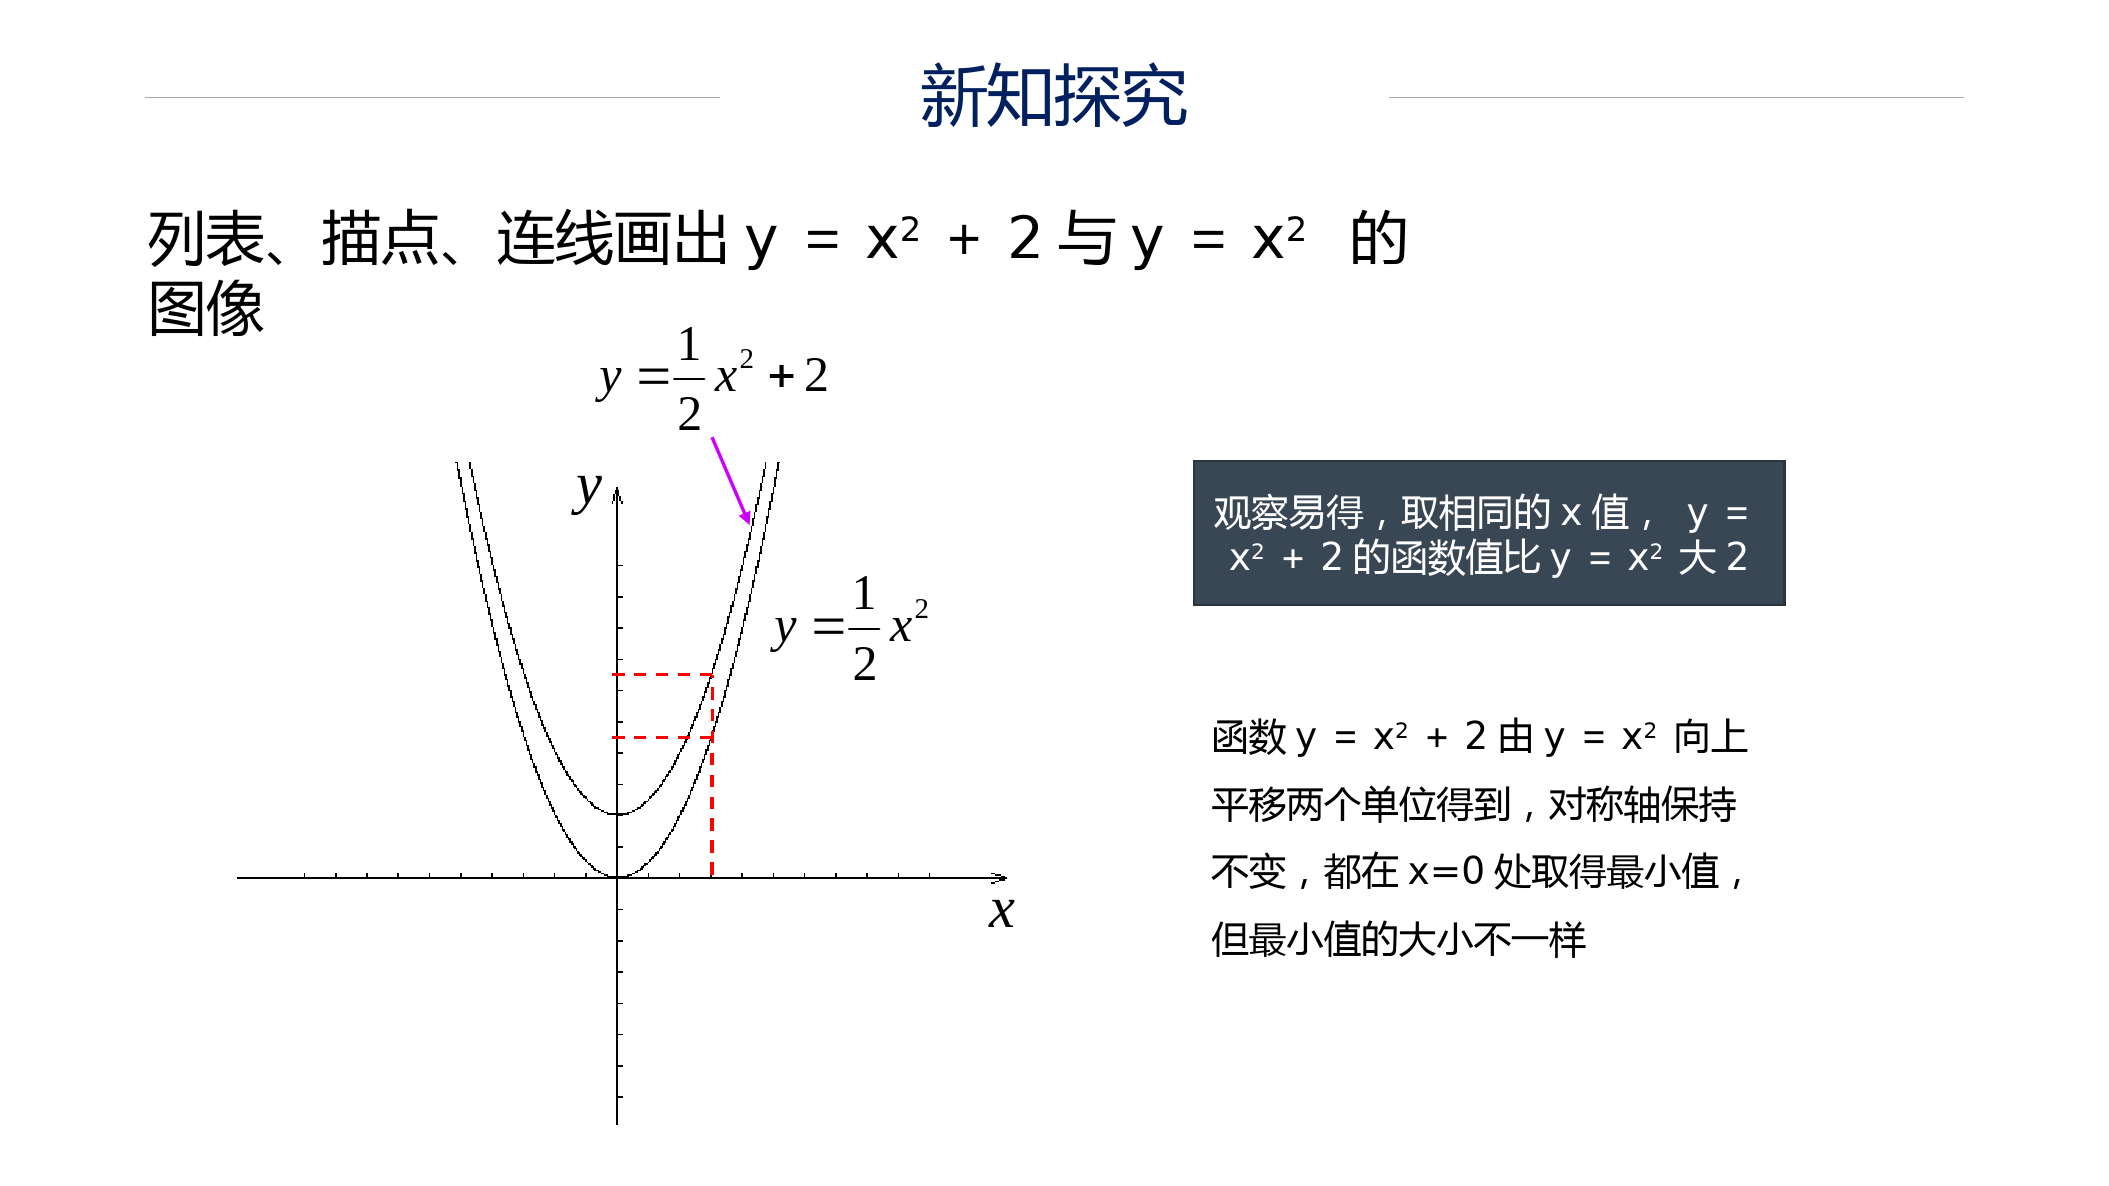 九上人教版数学22.1.3-二次函数y=a(x+h)2+k的图象和性